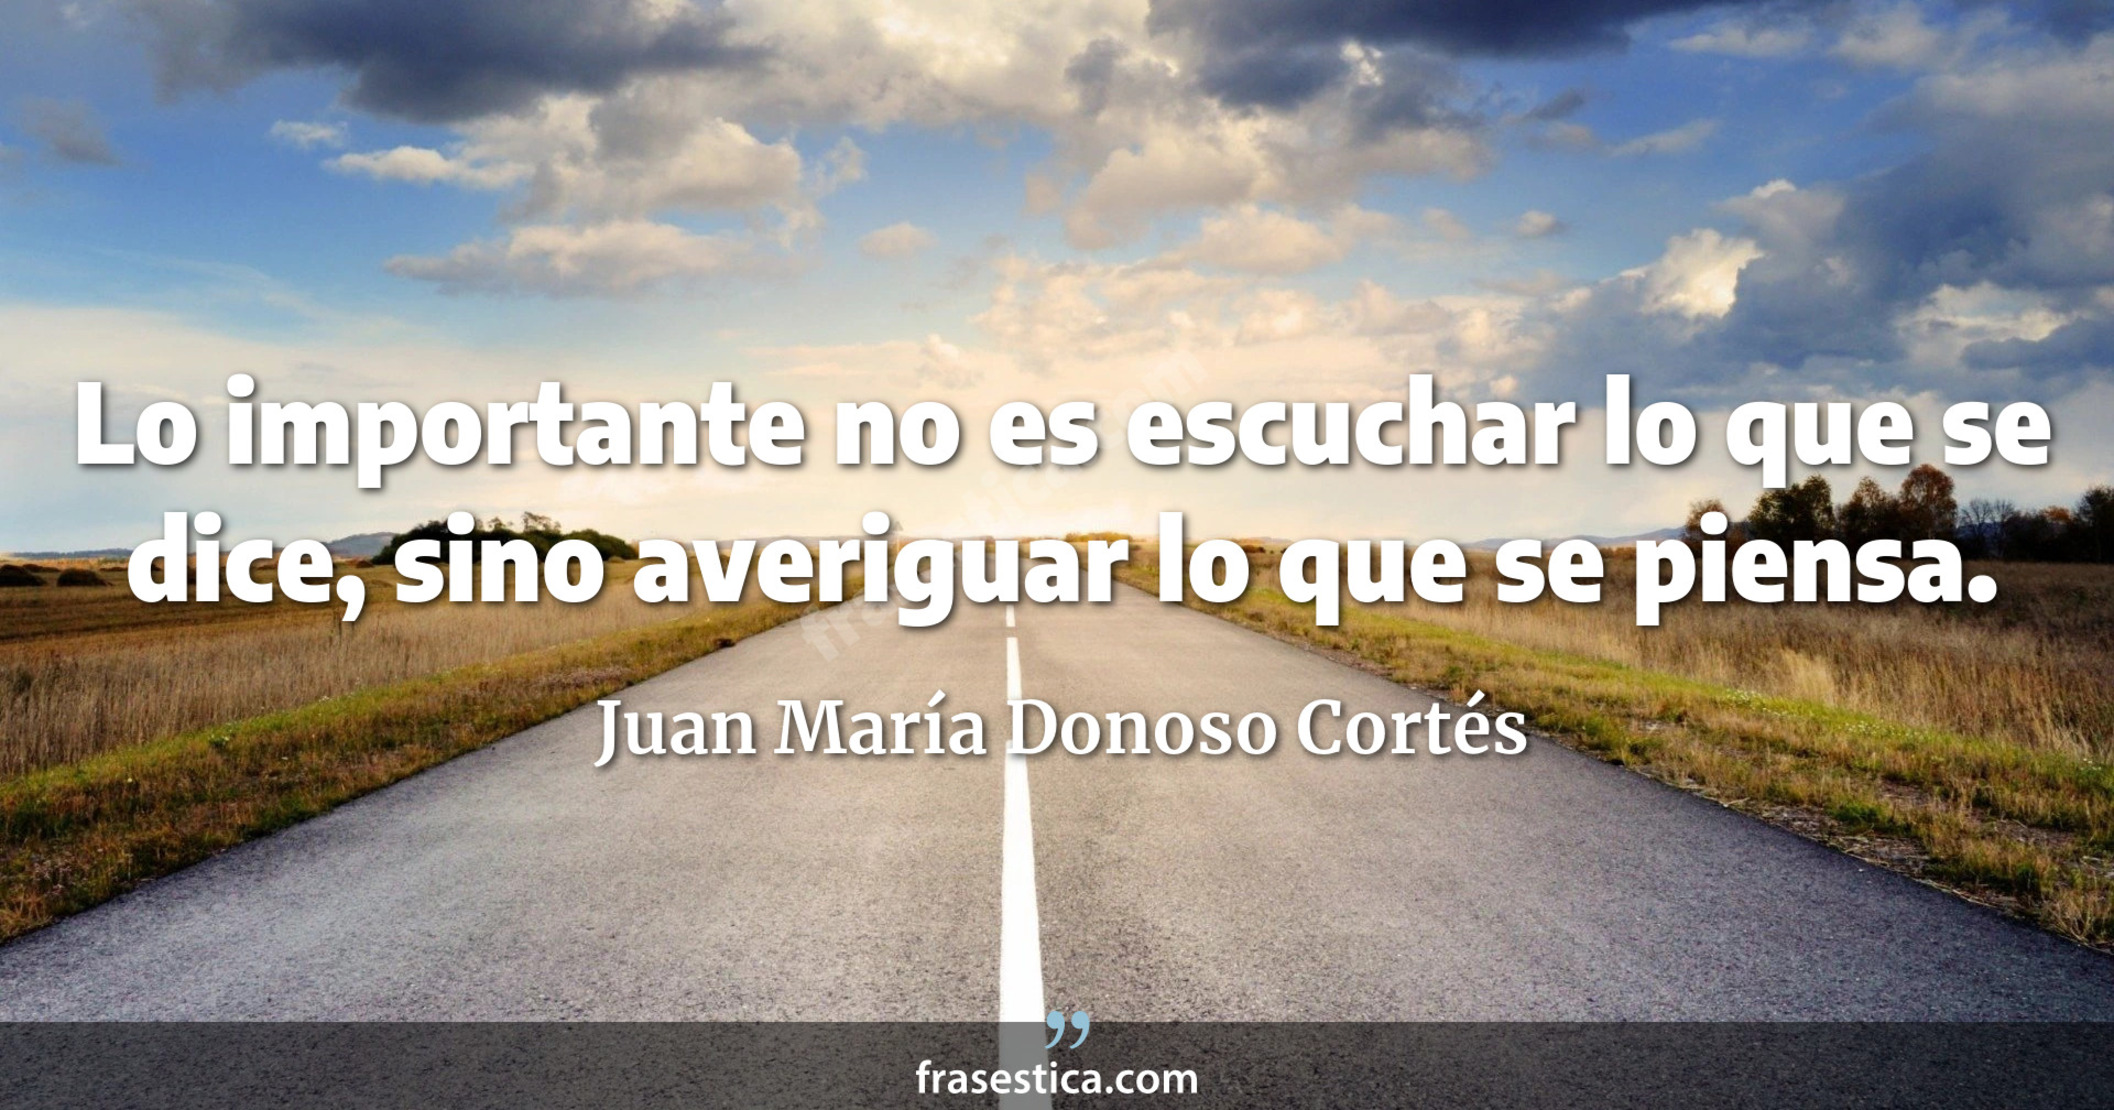 Lo importante no es escuchar lo que se dice, sino averiguar lo que se piensa. - Juan María Donoso Cortés